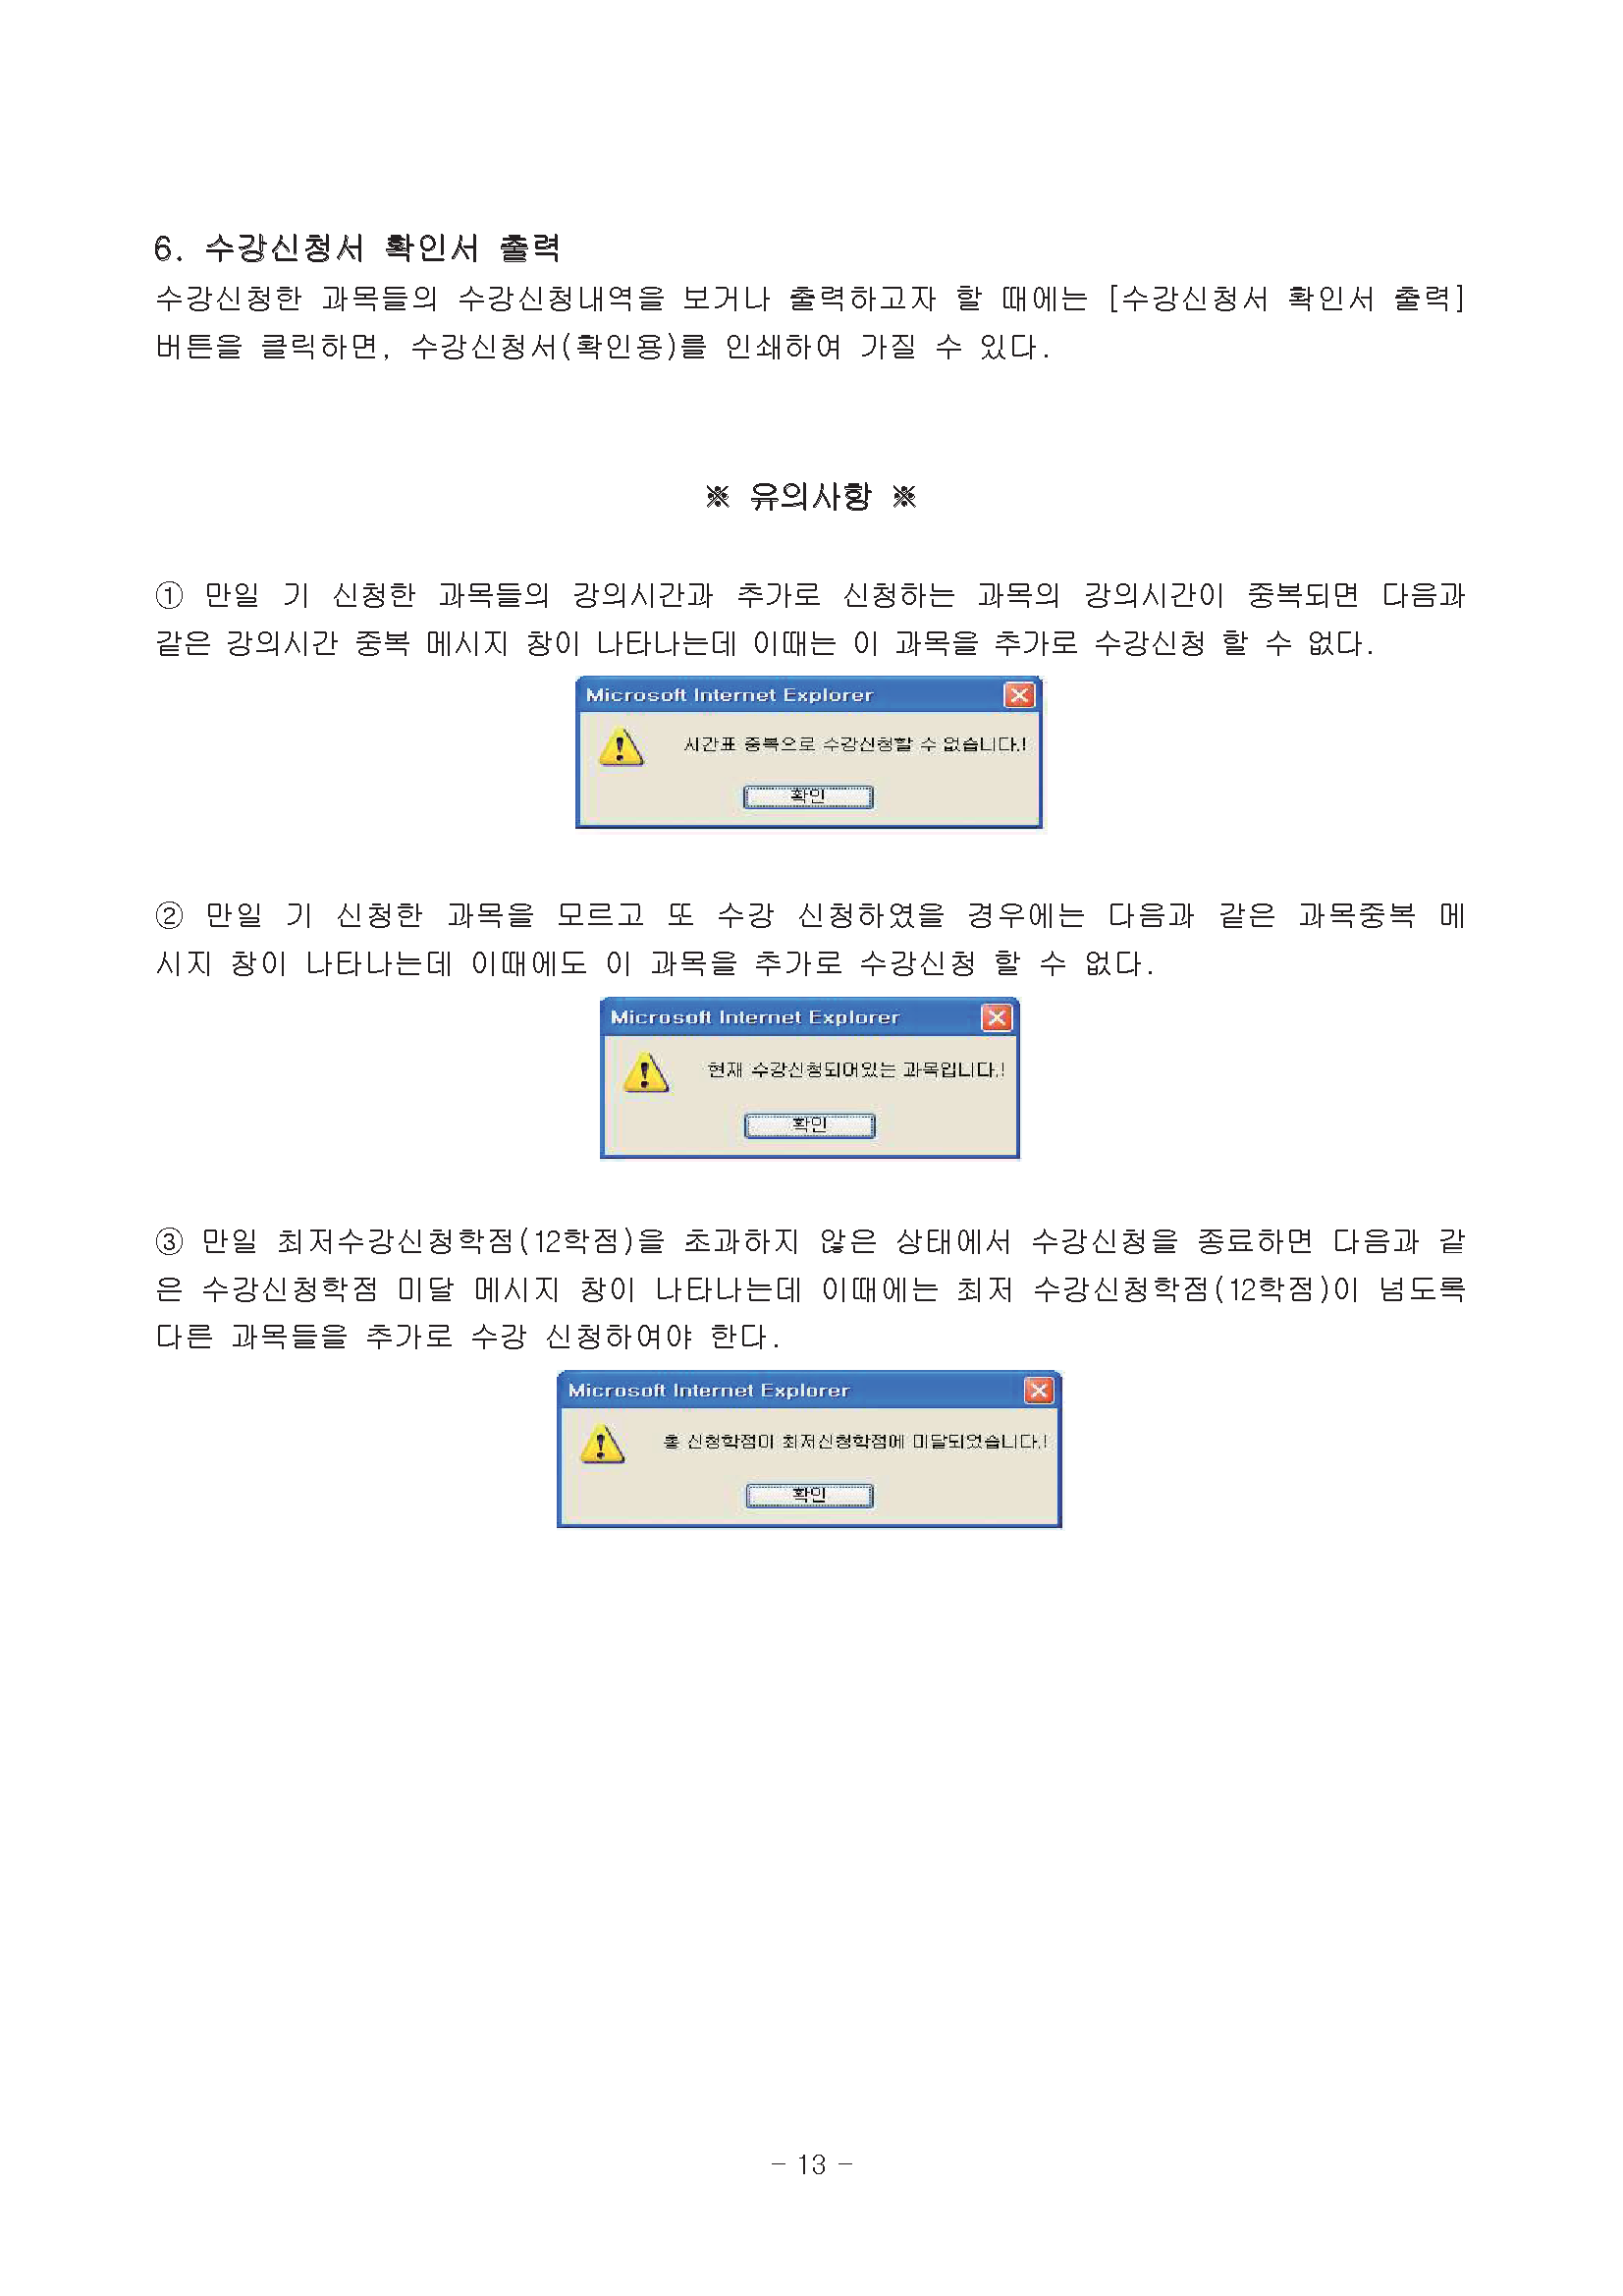 0302-2020학년도 1학기 강의시간표(교무팀_김동욱)13.png